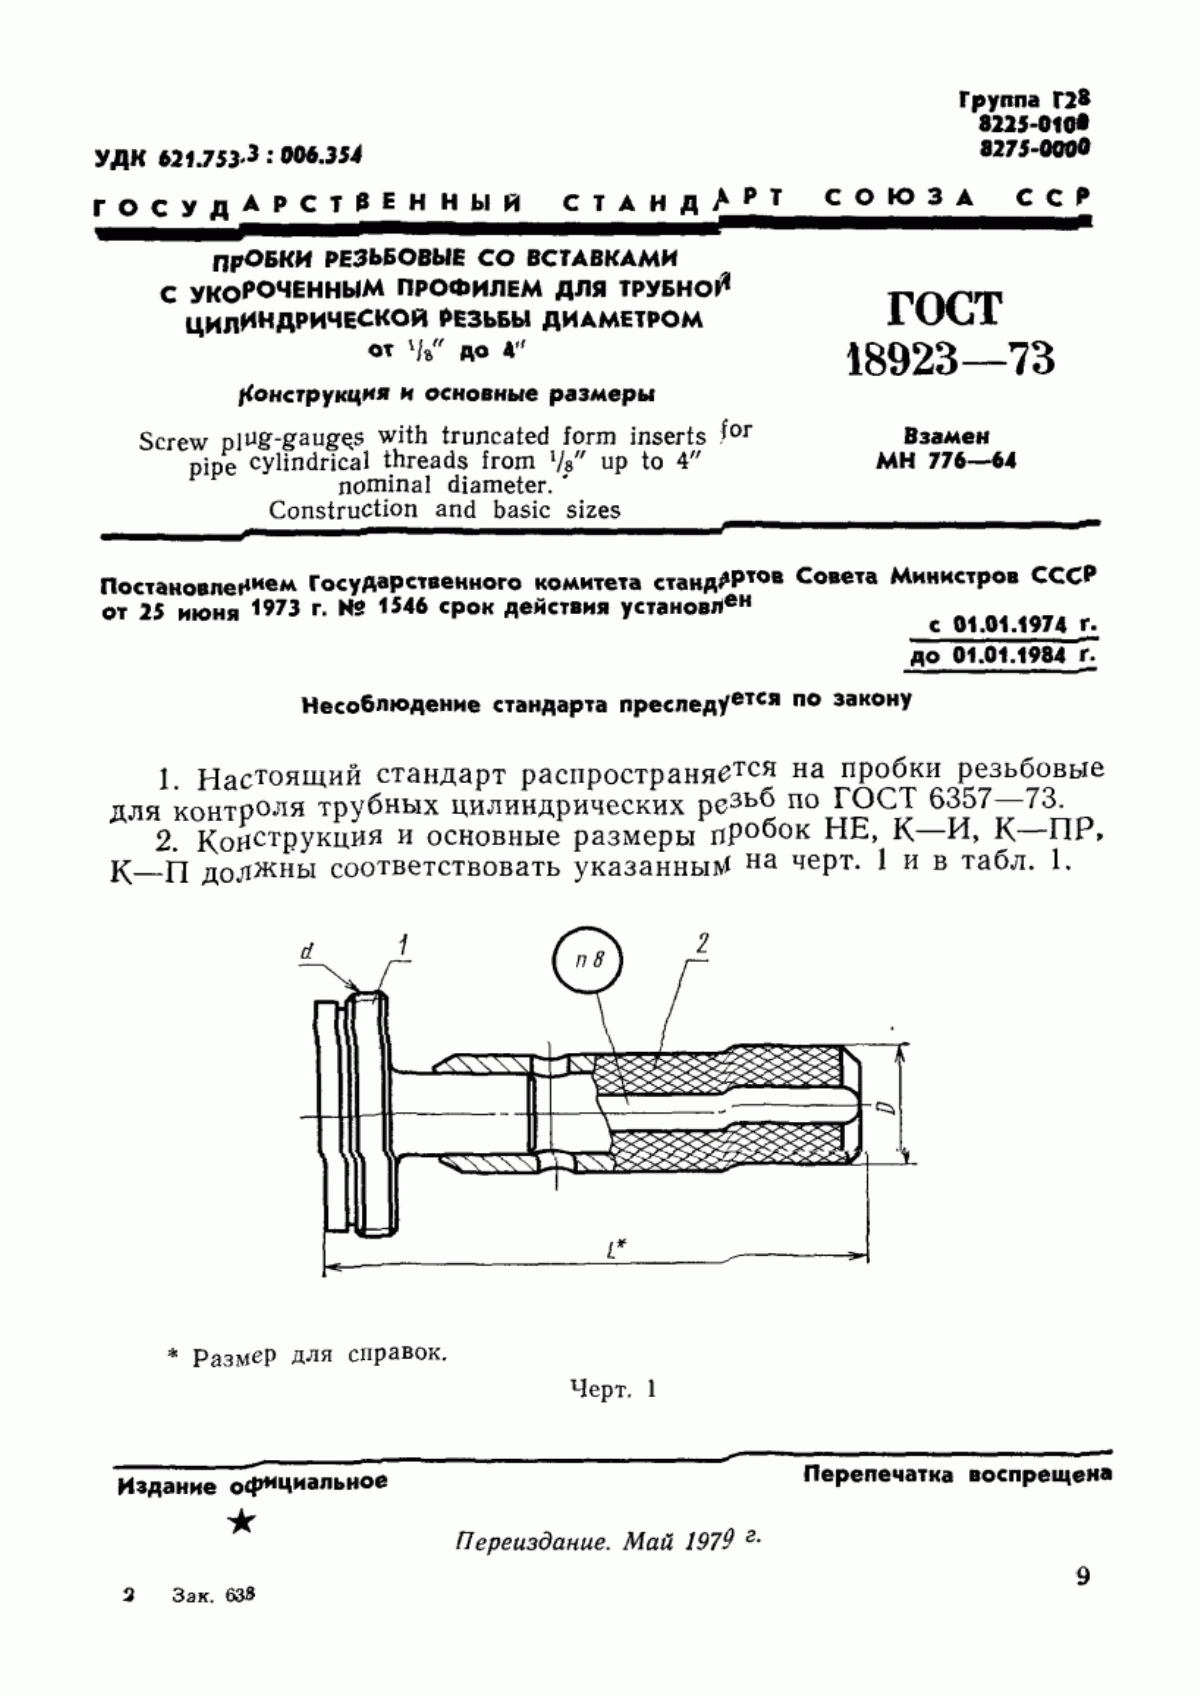 ГОСТ 18923-73 Пробки резьбовые со вставками с укороченным профилем для трубной цилиндрической резьбы диаметром от 1/16" до 4". Конструкция и основные размеры